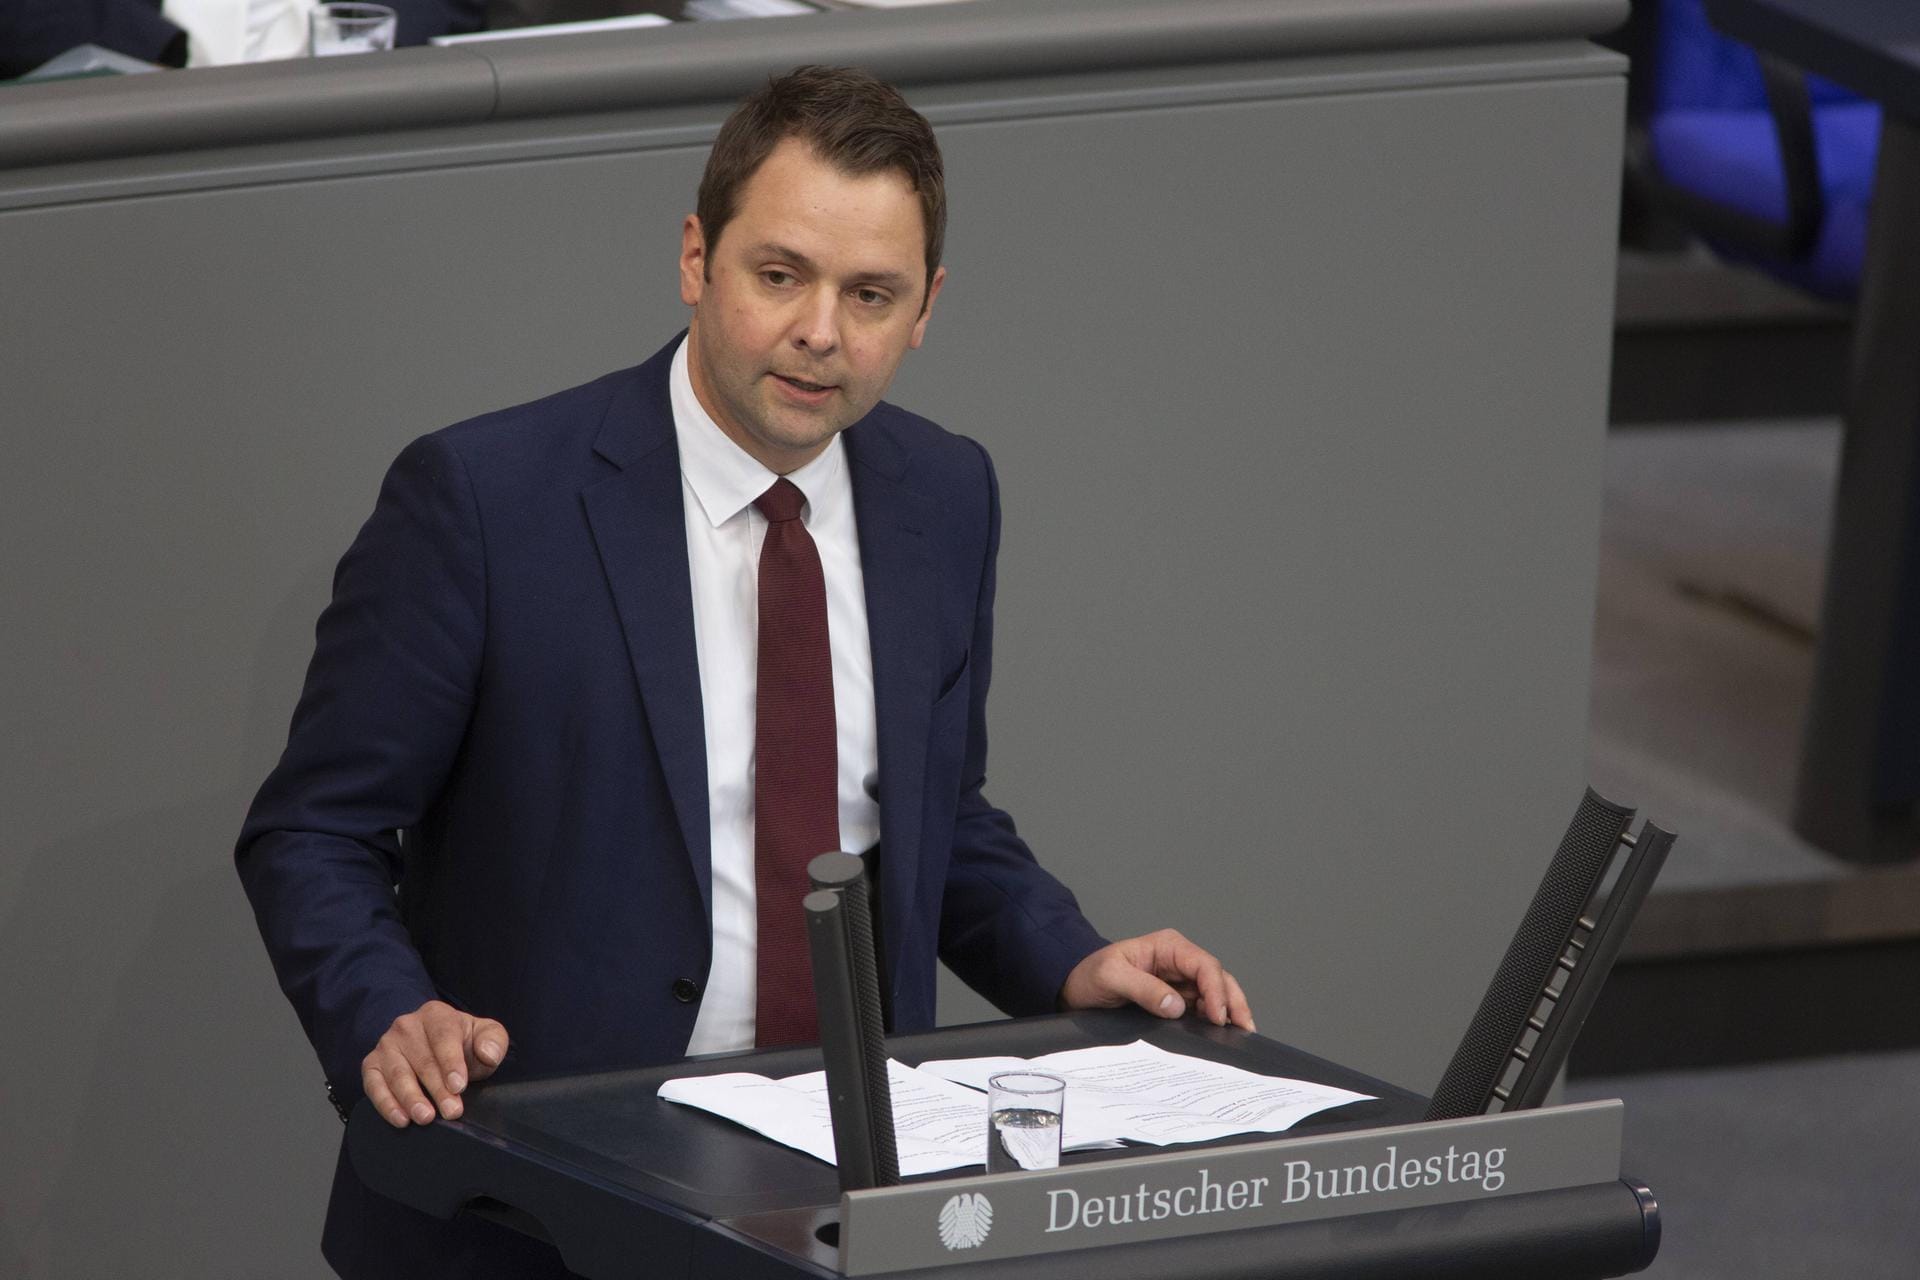 "Ich habe großen Respekt vor der souveränen Erklärung von Manuela Schwesig, sie verdient Respekt!", schreibt CSU-Bundestagsabgeordneter Andreas Lenz. "Persönlich alles Gute und rasche Genesung!"